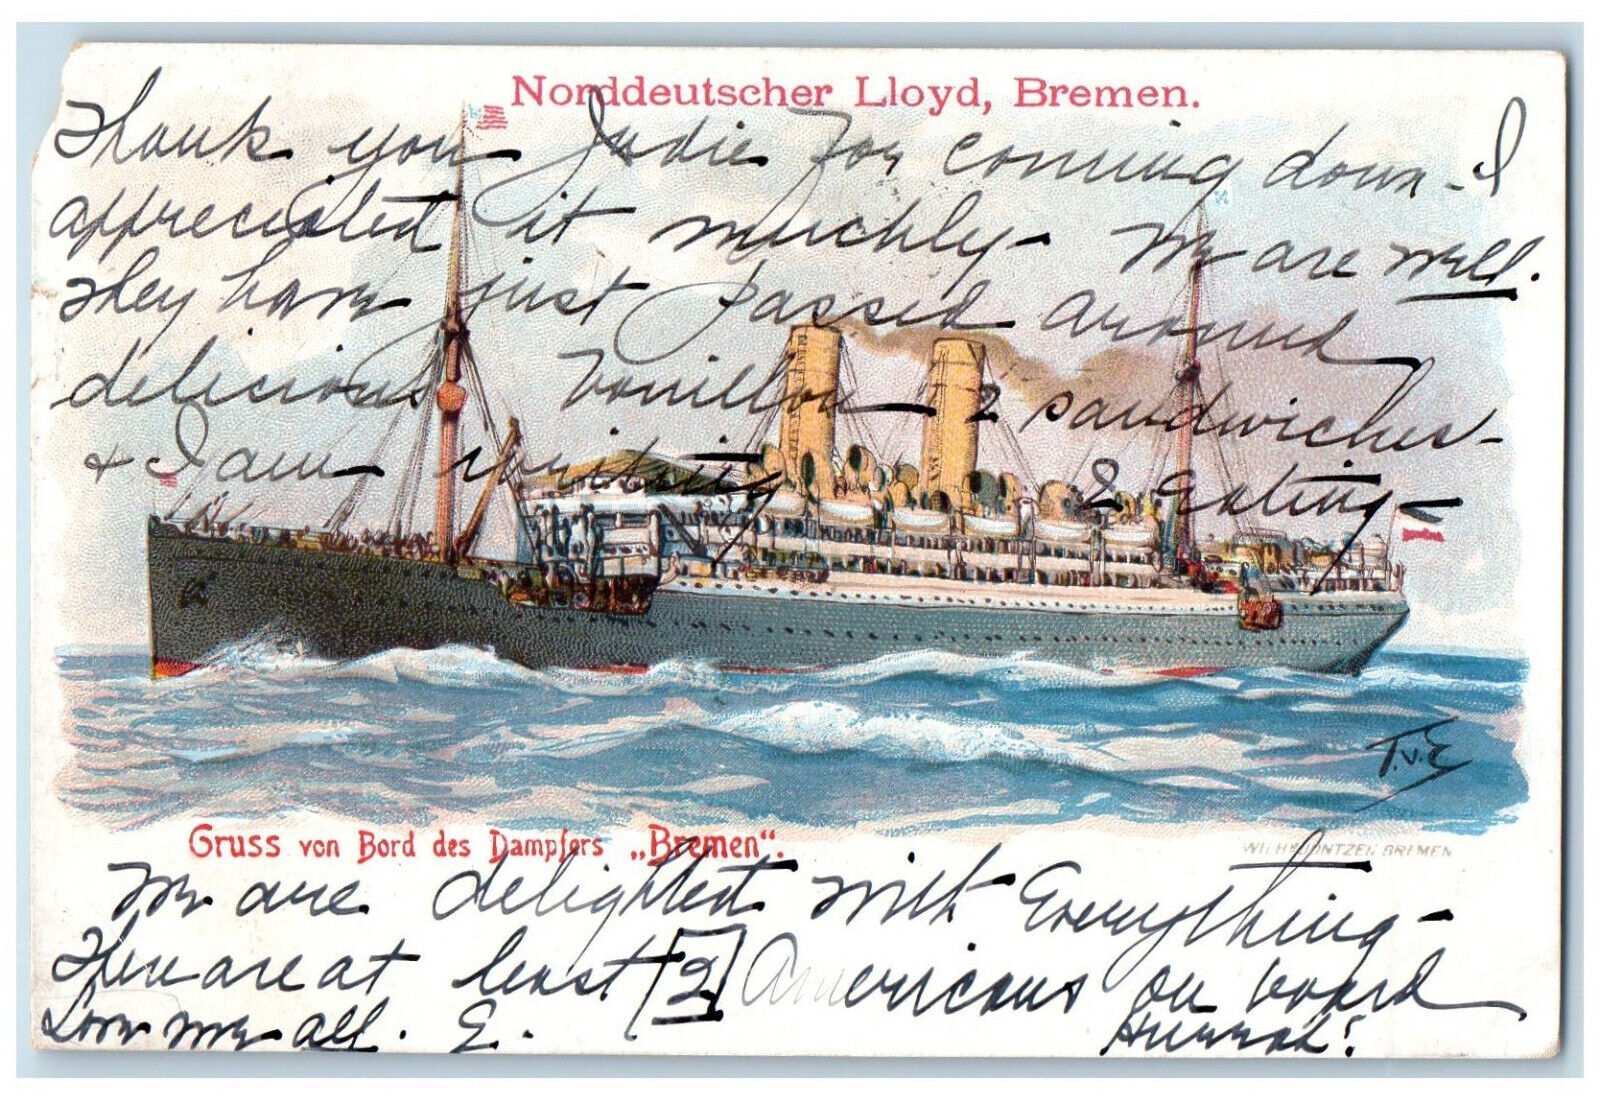 1905 Gruss Von Bord Des Dampfers Norddeutscher Lloyd Bremen Germany Postcard